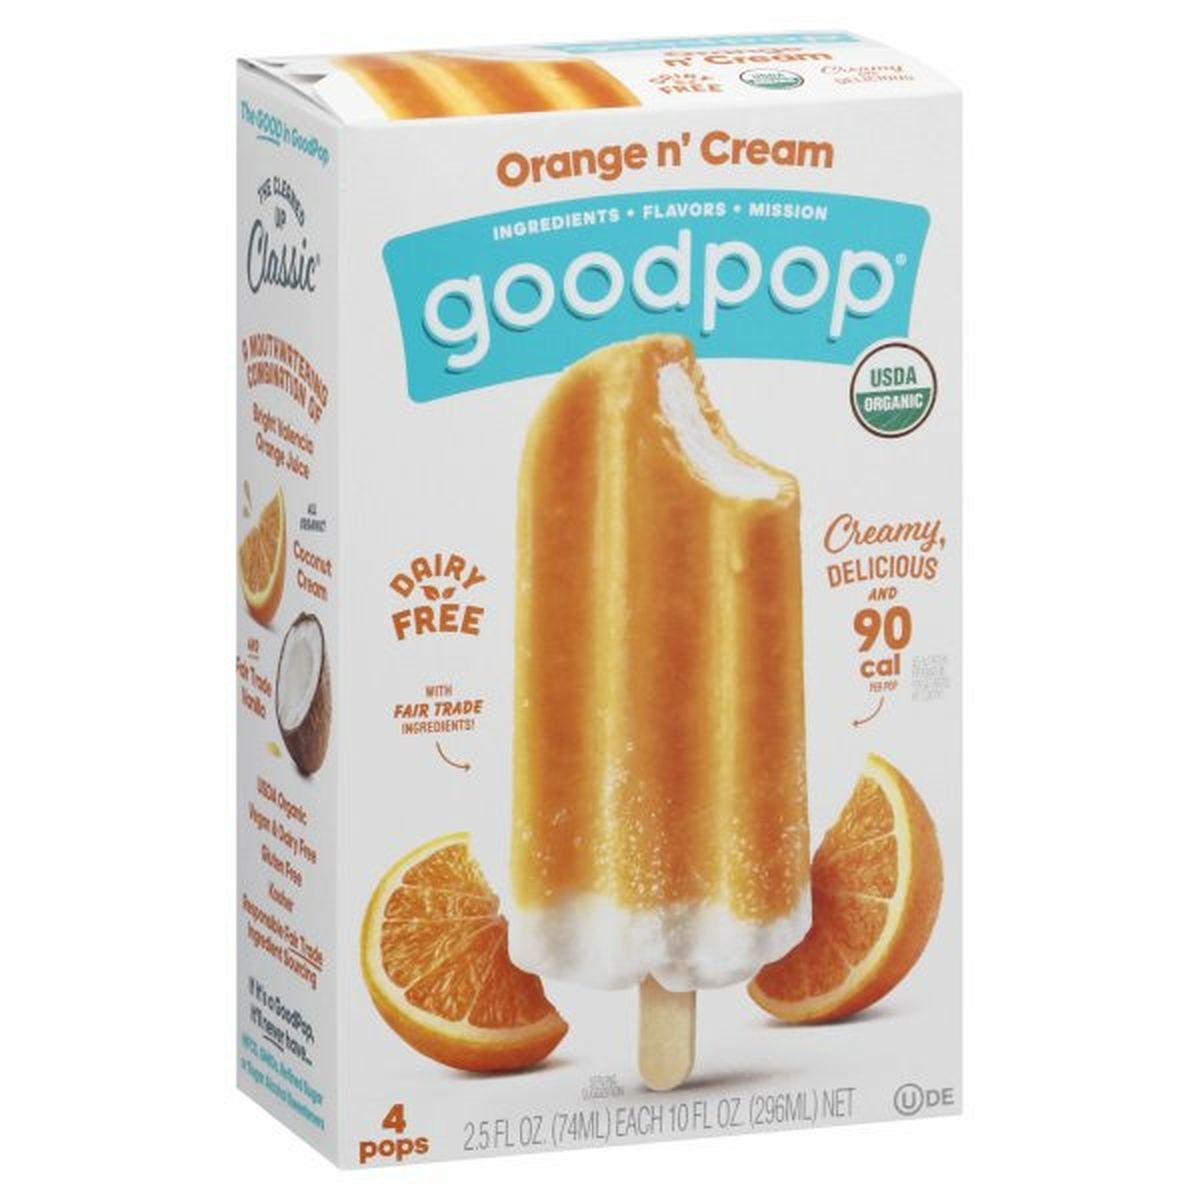 Calories in GoodPop Pops, Orange N' Cream